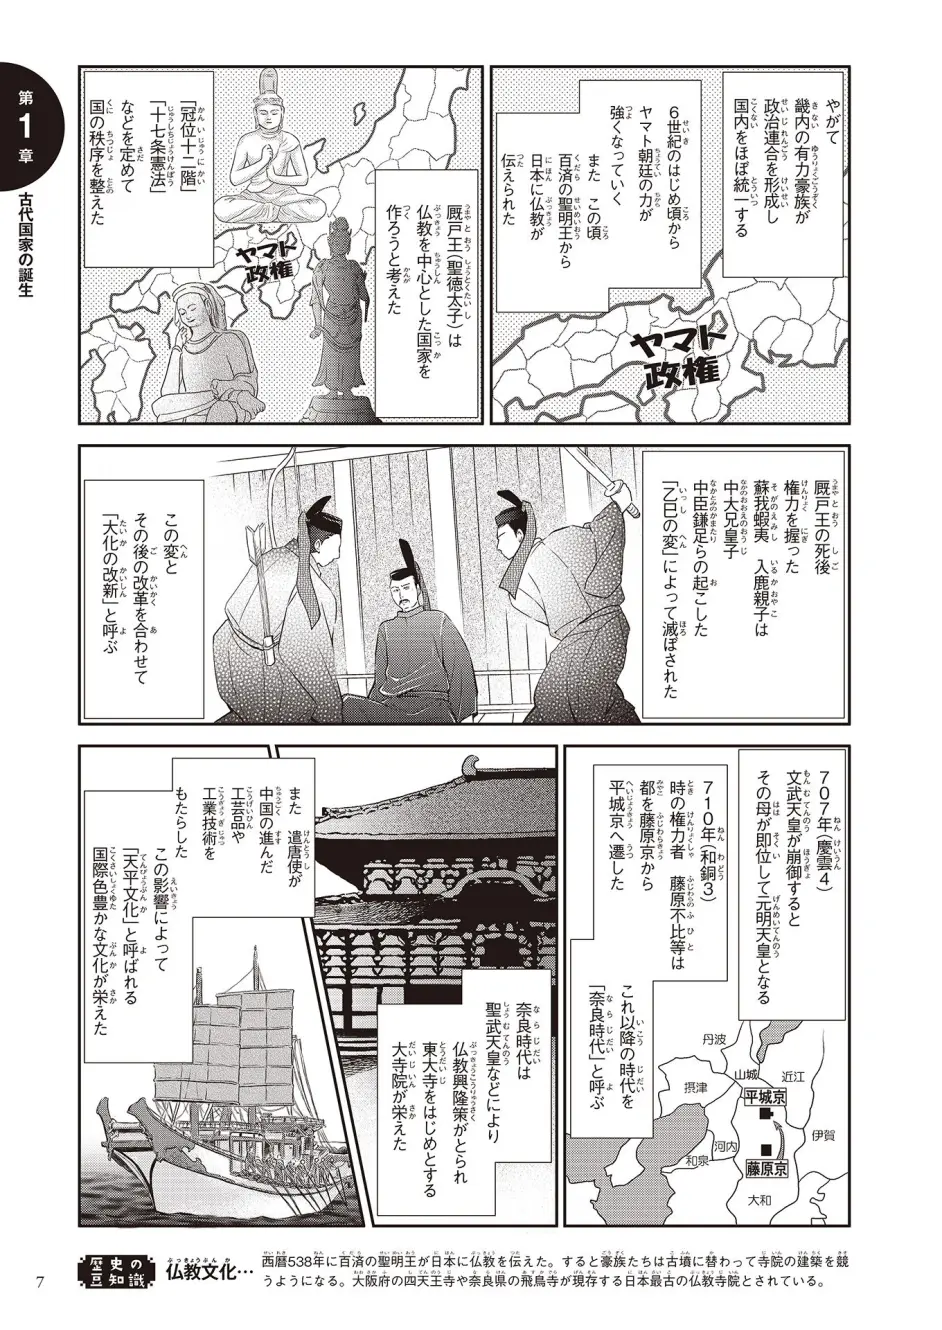 日本初中课外教材漫画解说影响日本历史的1000人 第一章 古代国家的诞生 卑弥呼 哔哩哔哩